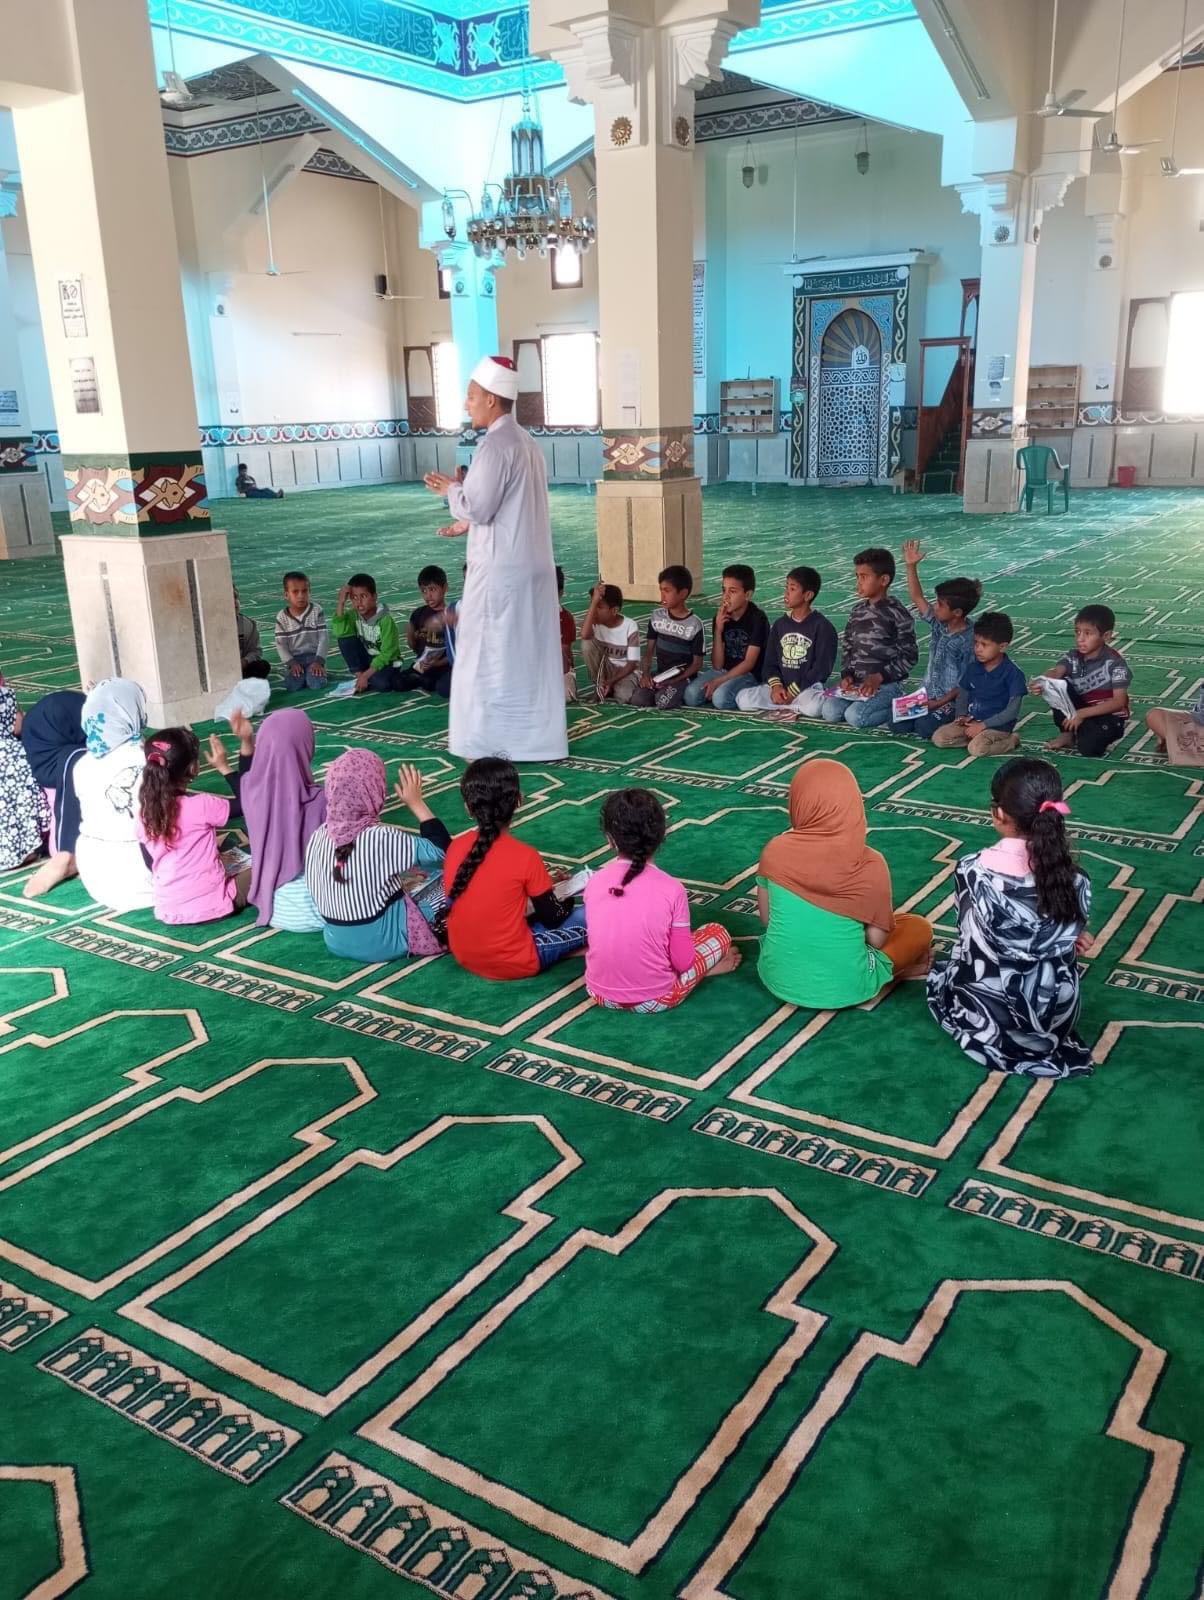 البرنامج الصيفي للطفل في مساجد شمال سيناء (1)